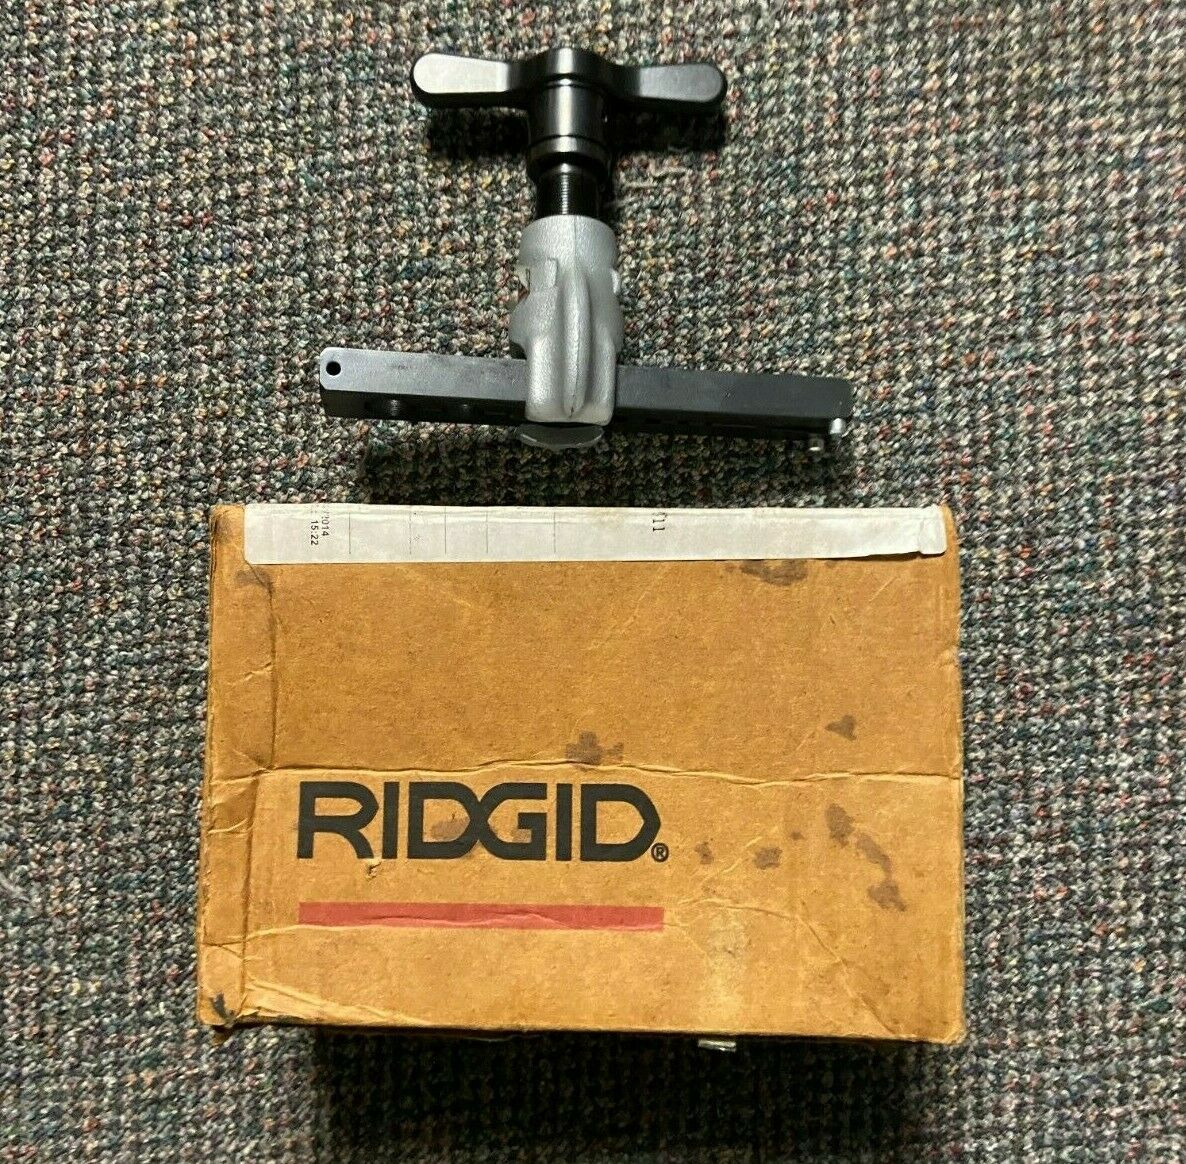 Ridgid #458r Ratcheting Flaring Tool - (1/8" - 3/4")